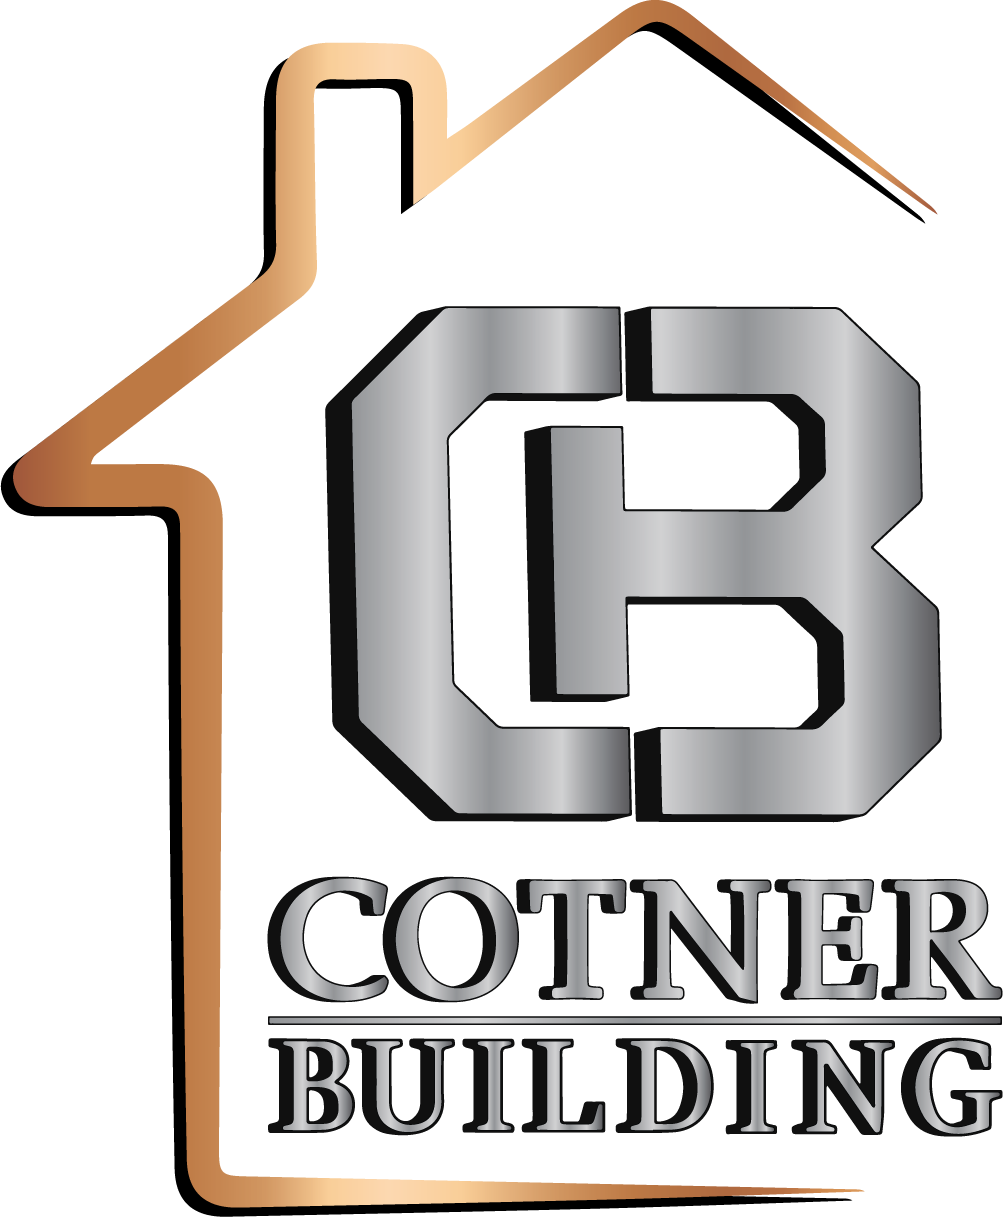 Cotner Building & Remodeling Company, LLC logo